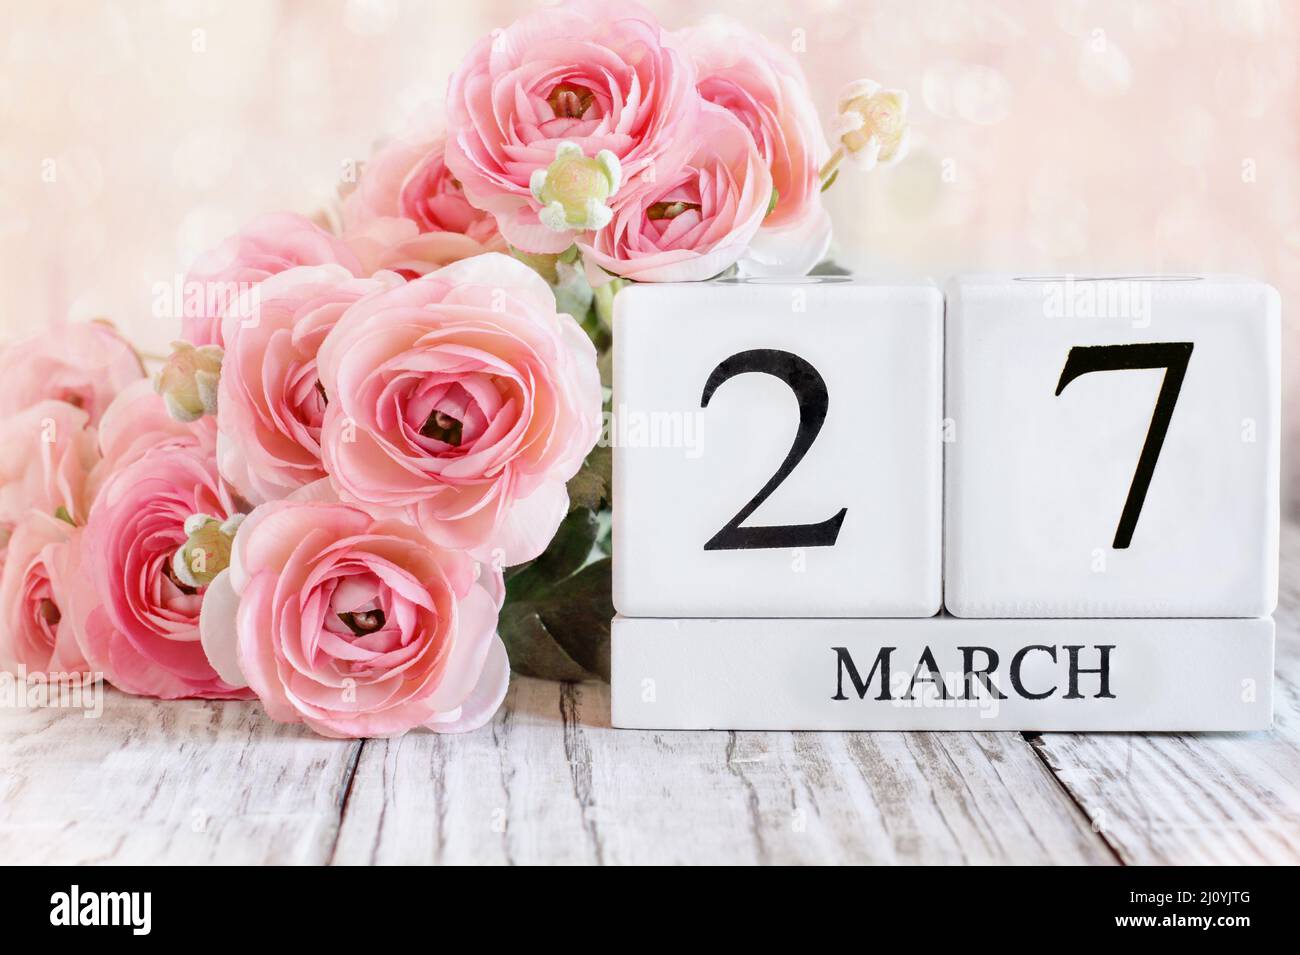 Bloques de calendario de madera blanca con la fecha del 27th de marzo y flores de ranunculus rosas sobre una mesa de madera. Enfoque selectivo con fondo borroso. Foto de stock